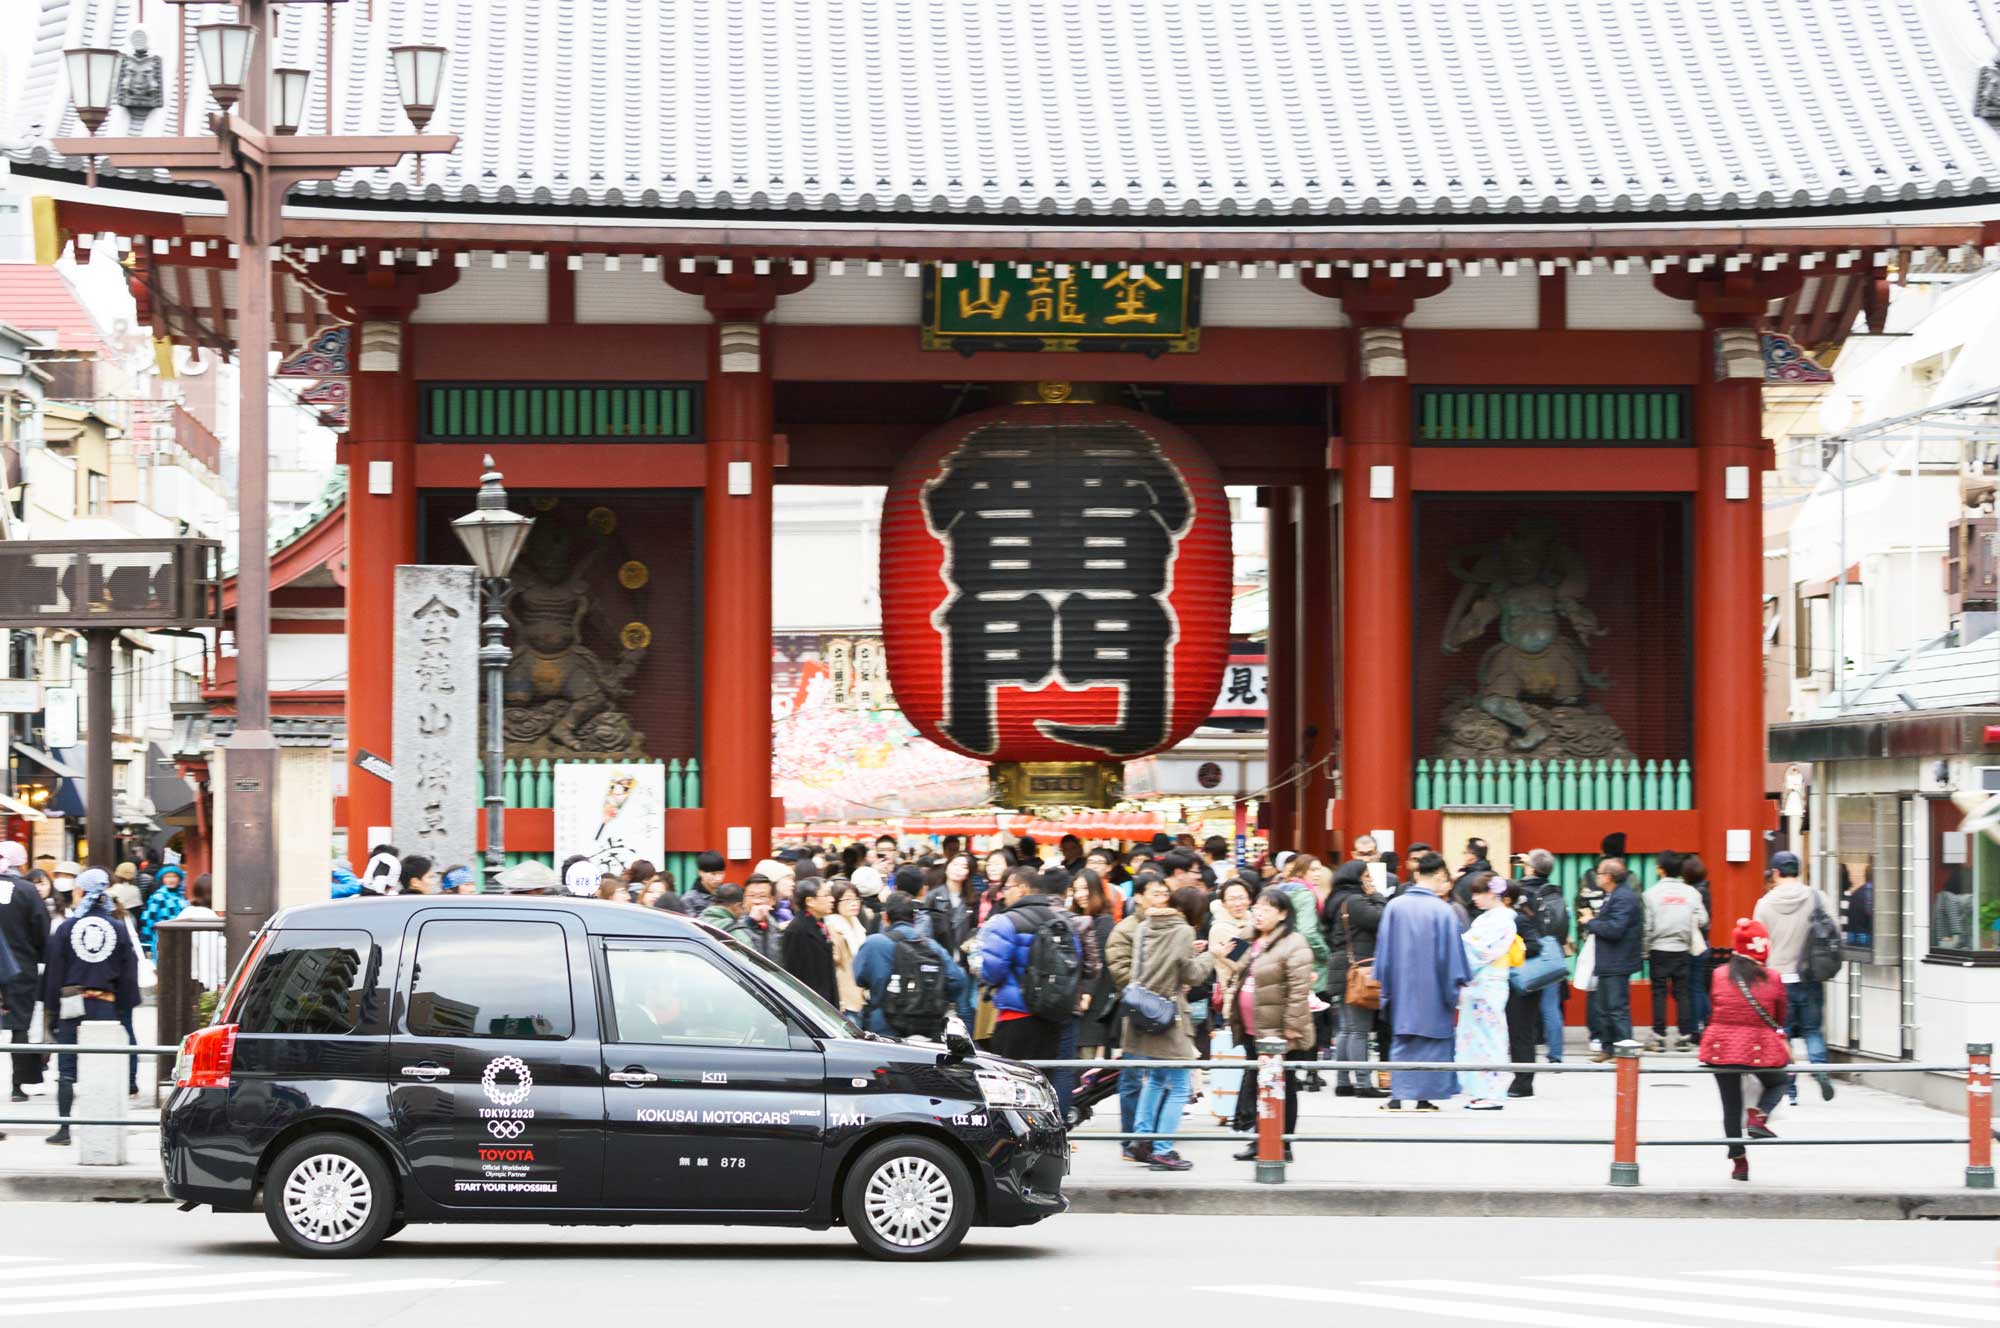 皇居 浅草 スカイツリータウン 5時間コース 東京観光をタクシーで楽しむためのポータルサイト Tokyodrive